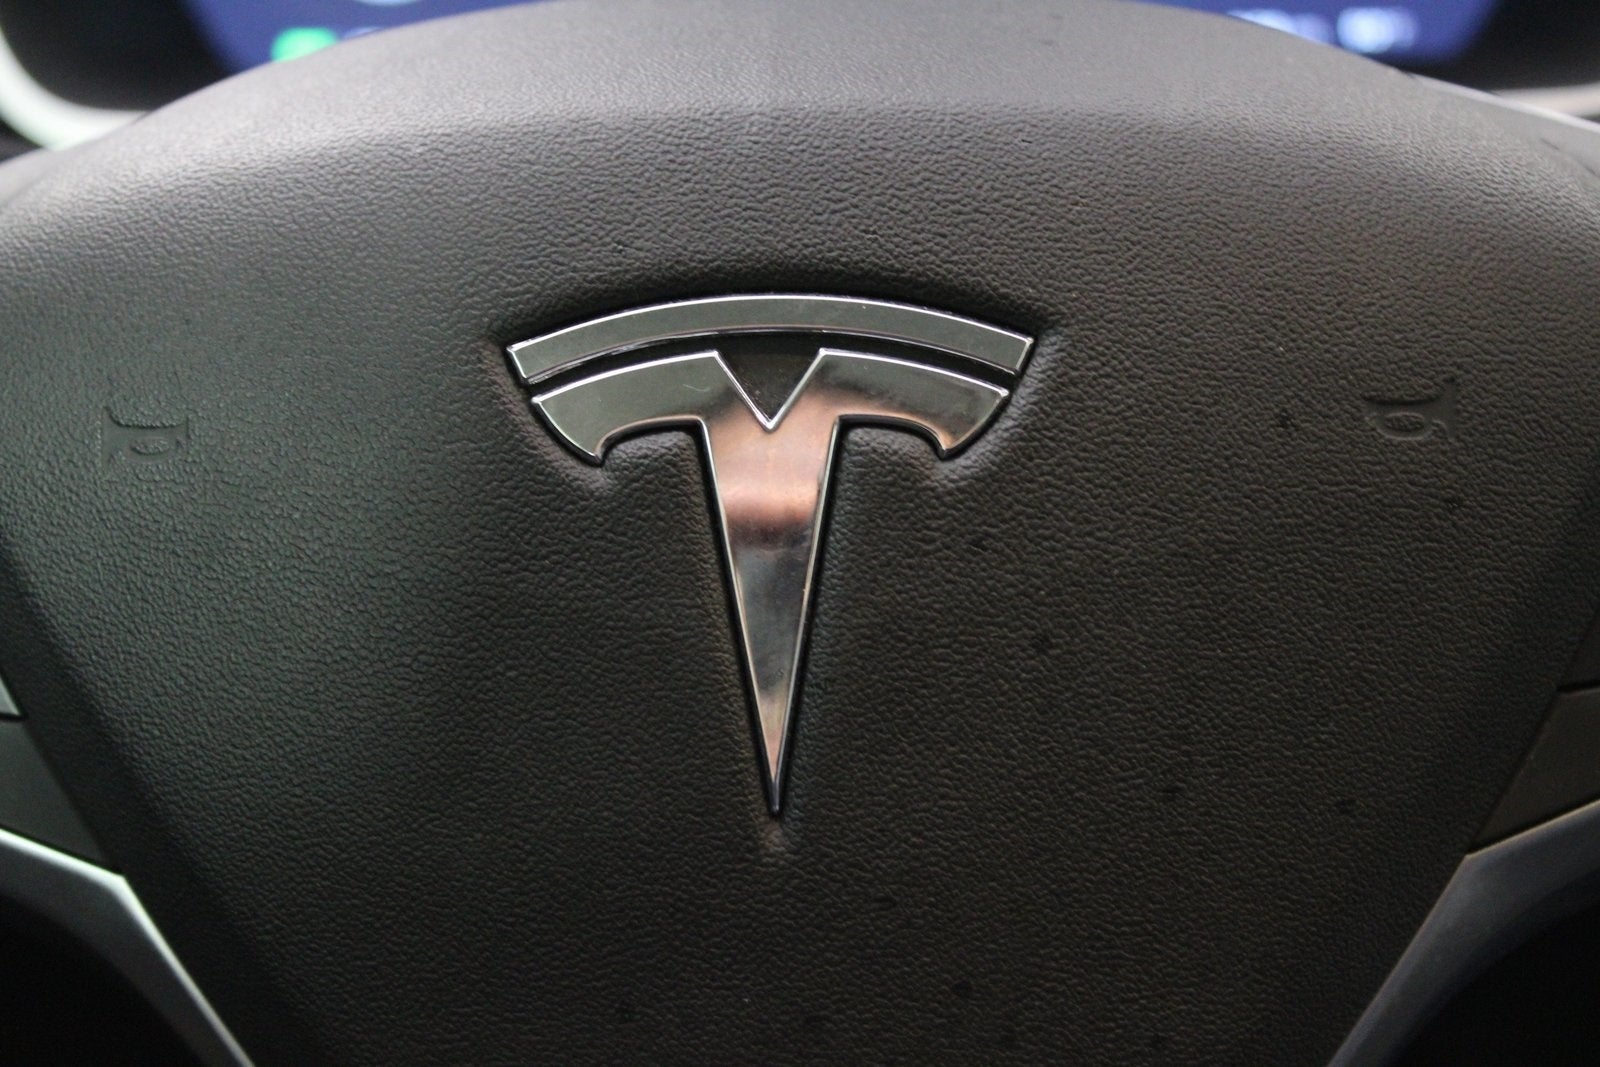 2015 Tesla Model S 70